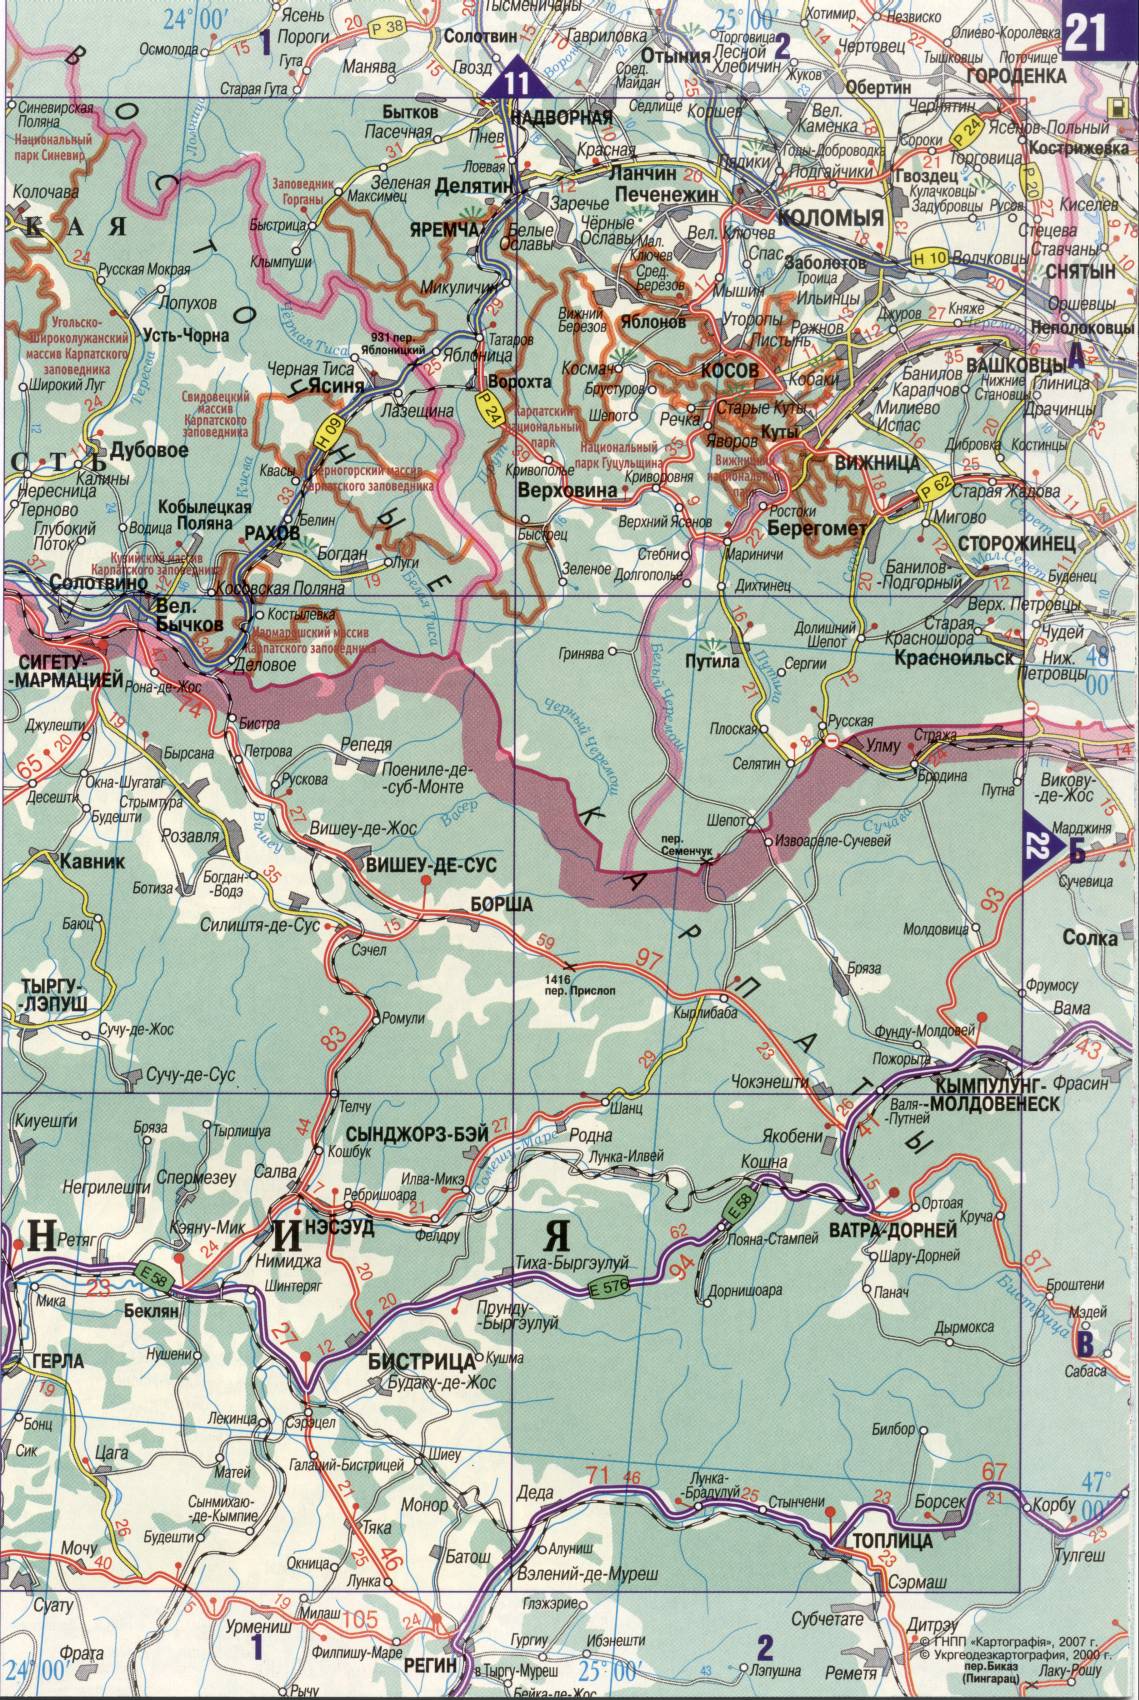 Карта Украины. Подробная карта дорог Украина из автомобильног атласа. скачать бесплатно, B2